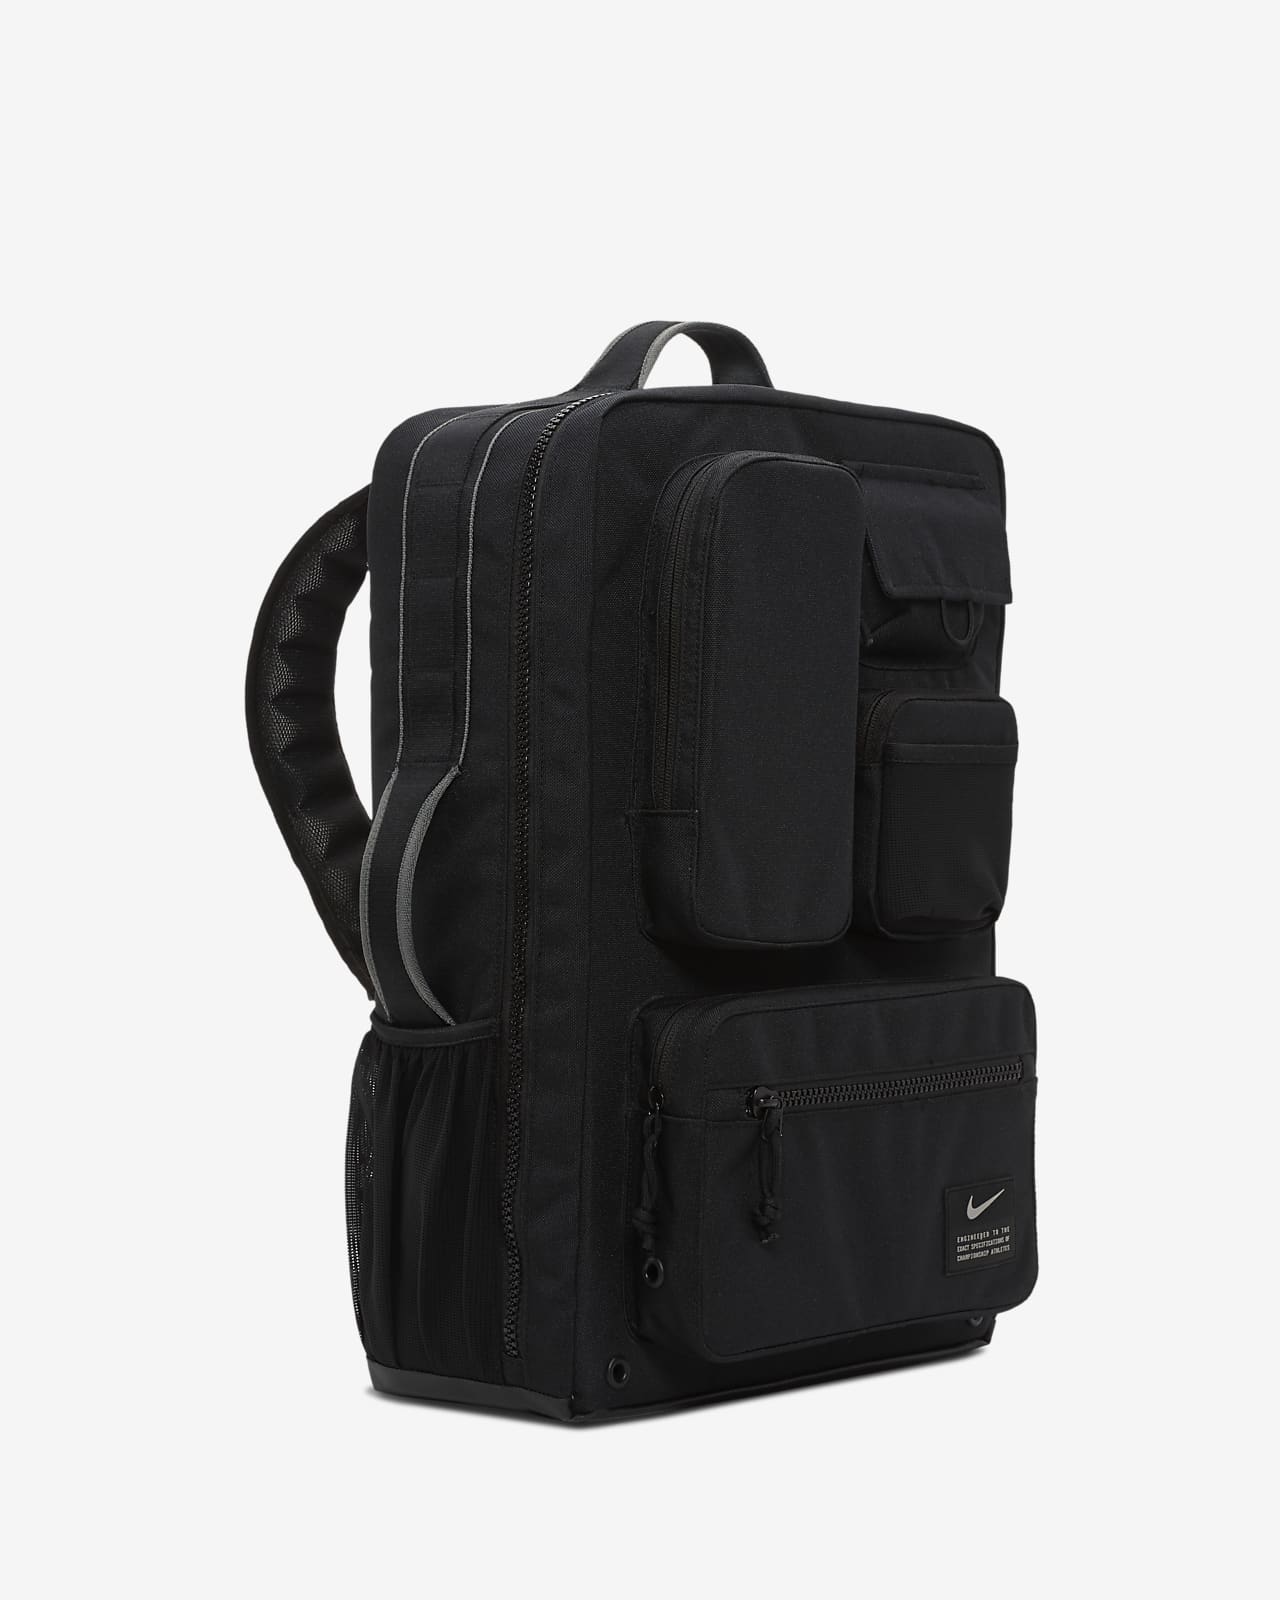 nike elite backpack canada